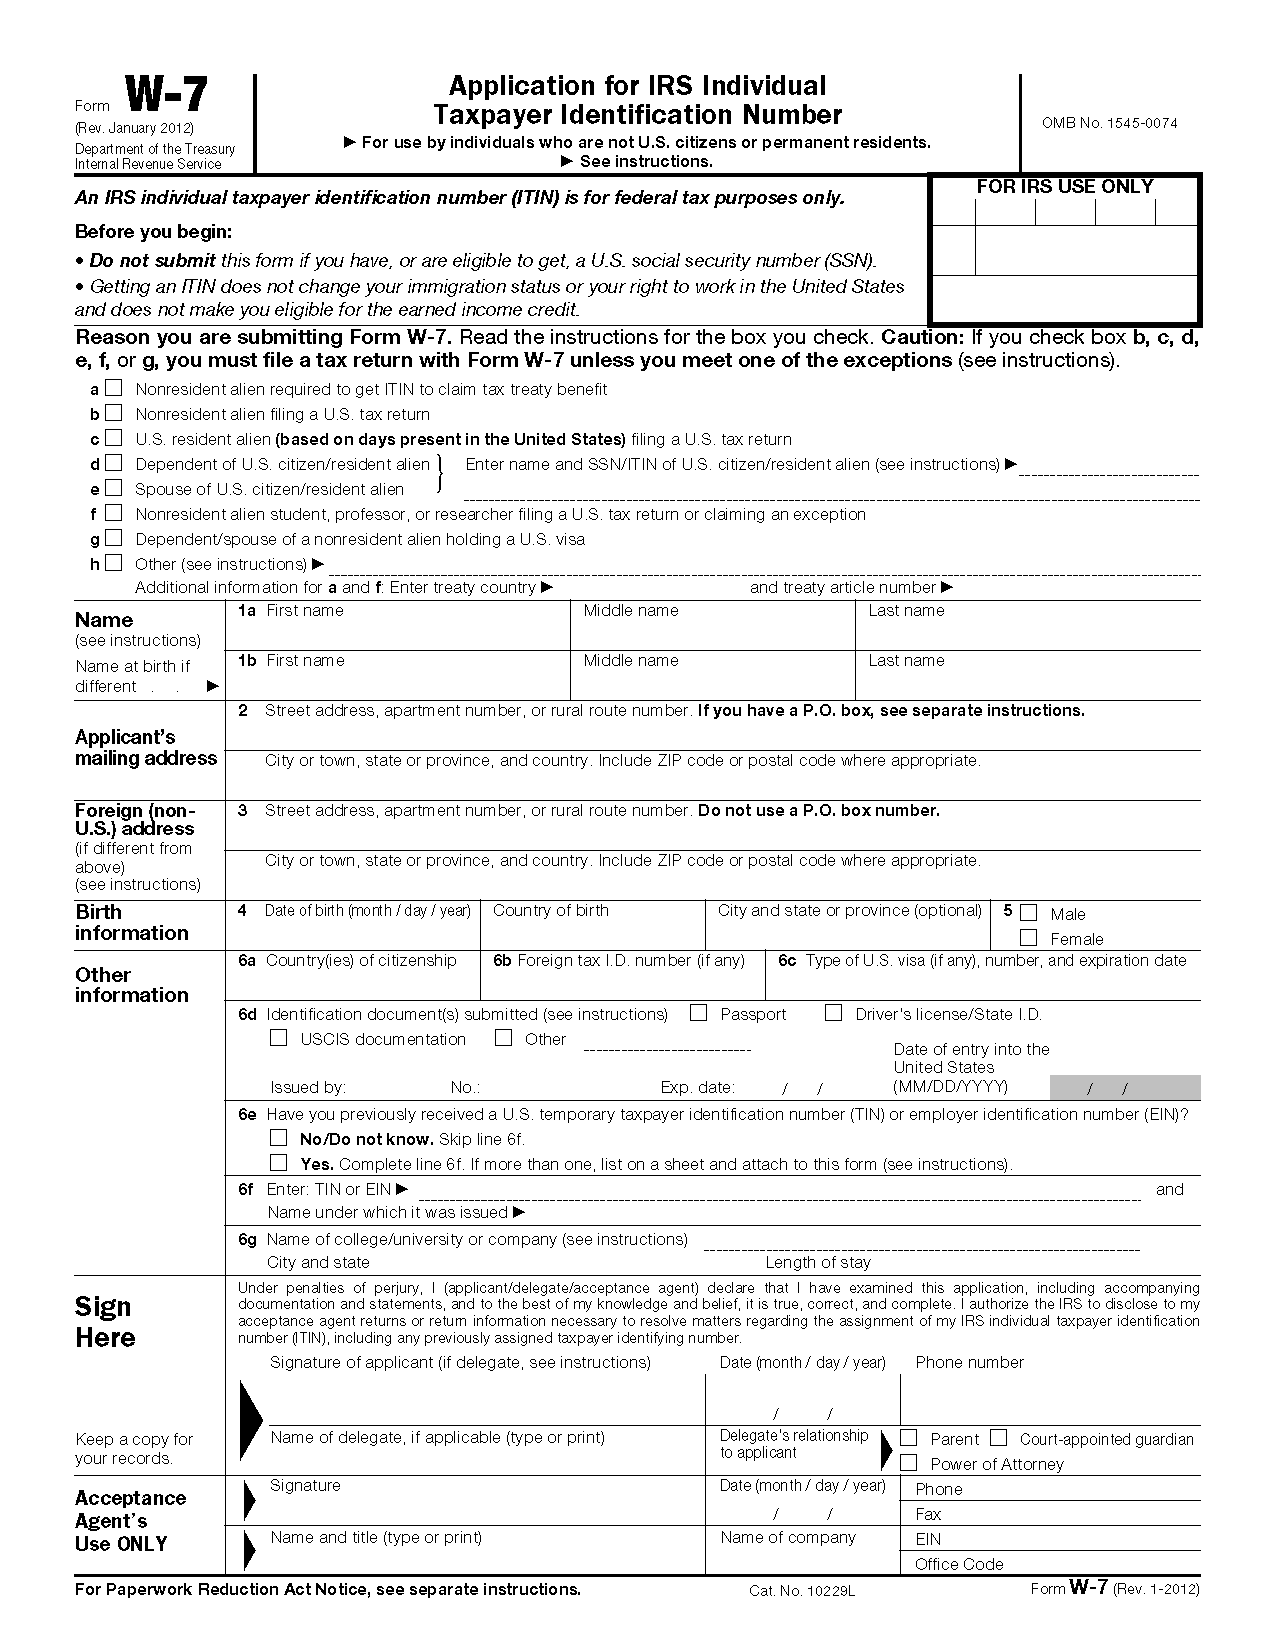 IRS Tax ID Application